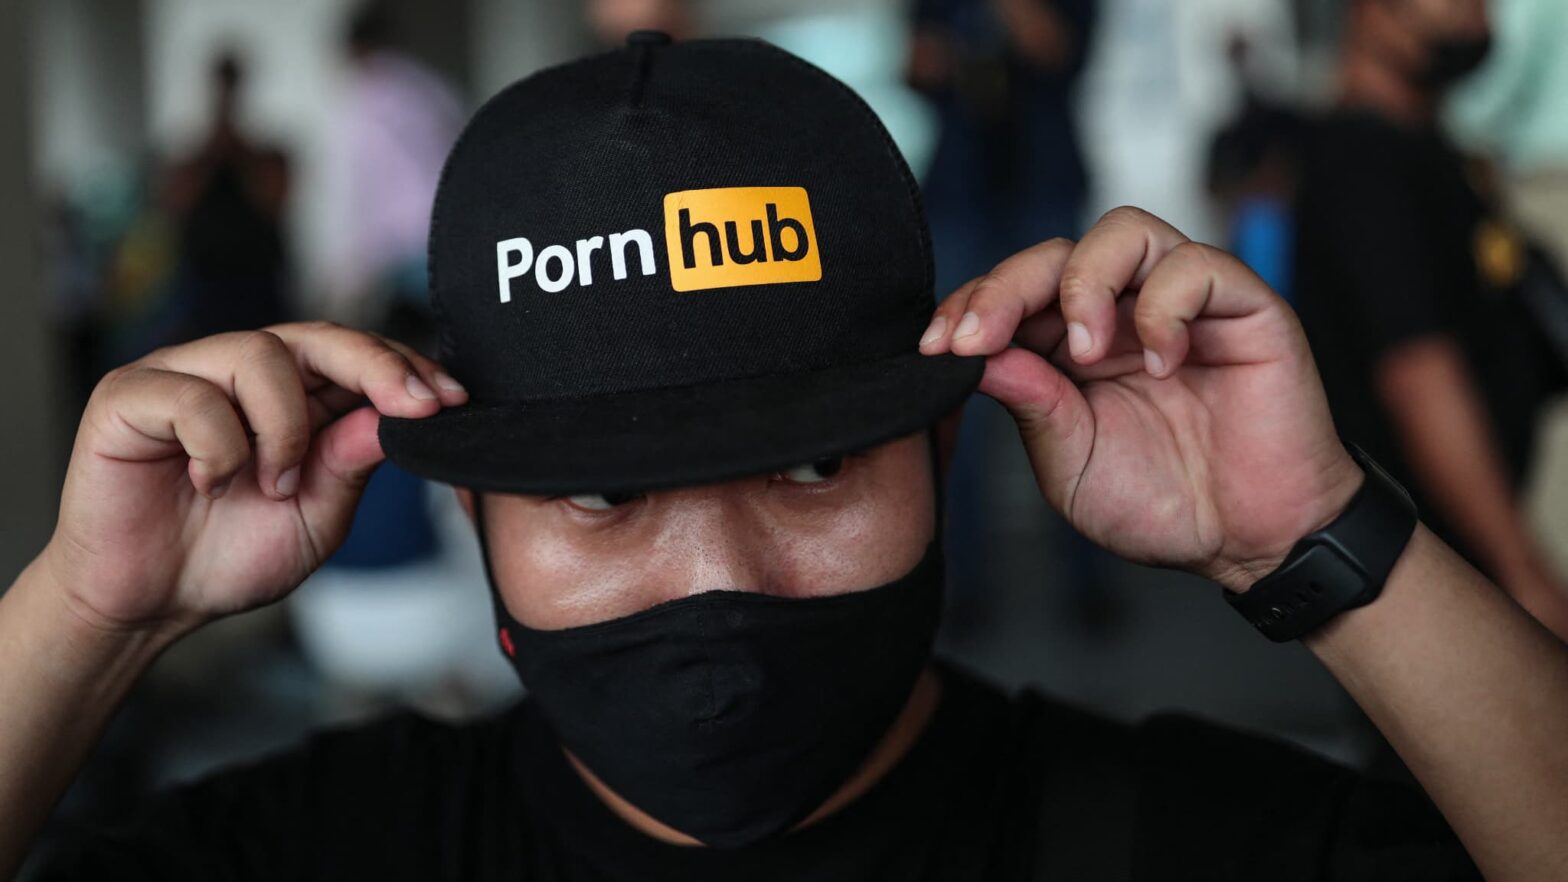 Le gouvernement publie un décret pour bloquer de nombreux sites pornographiques